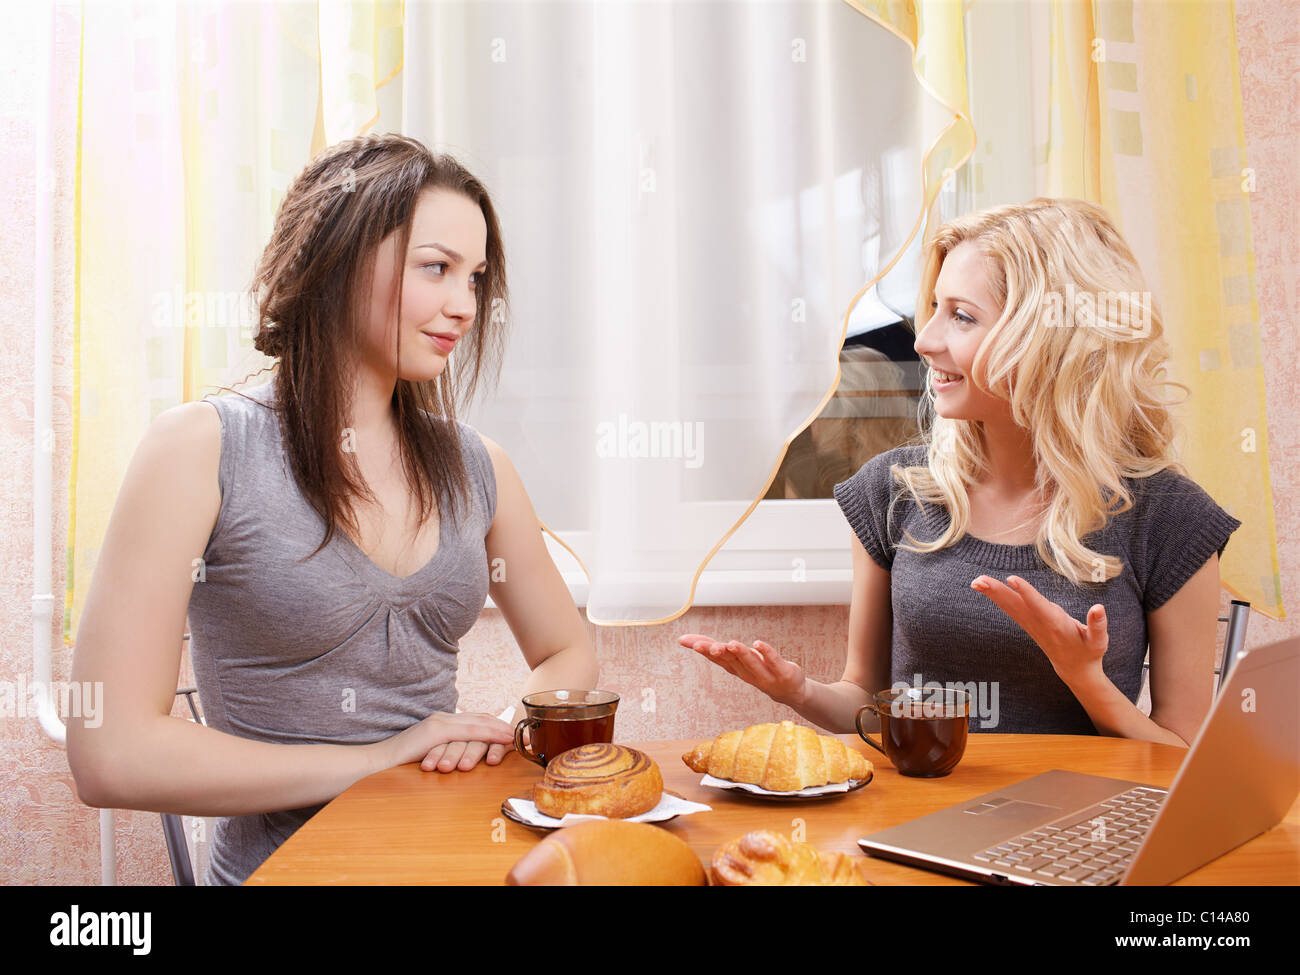 Разговор с бывшей подругой. Две девушки за столом. Подруги за столом. Чаепитие с подругами. Две женщины сидят за столом.